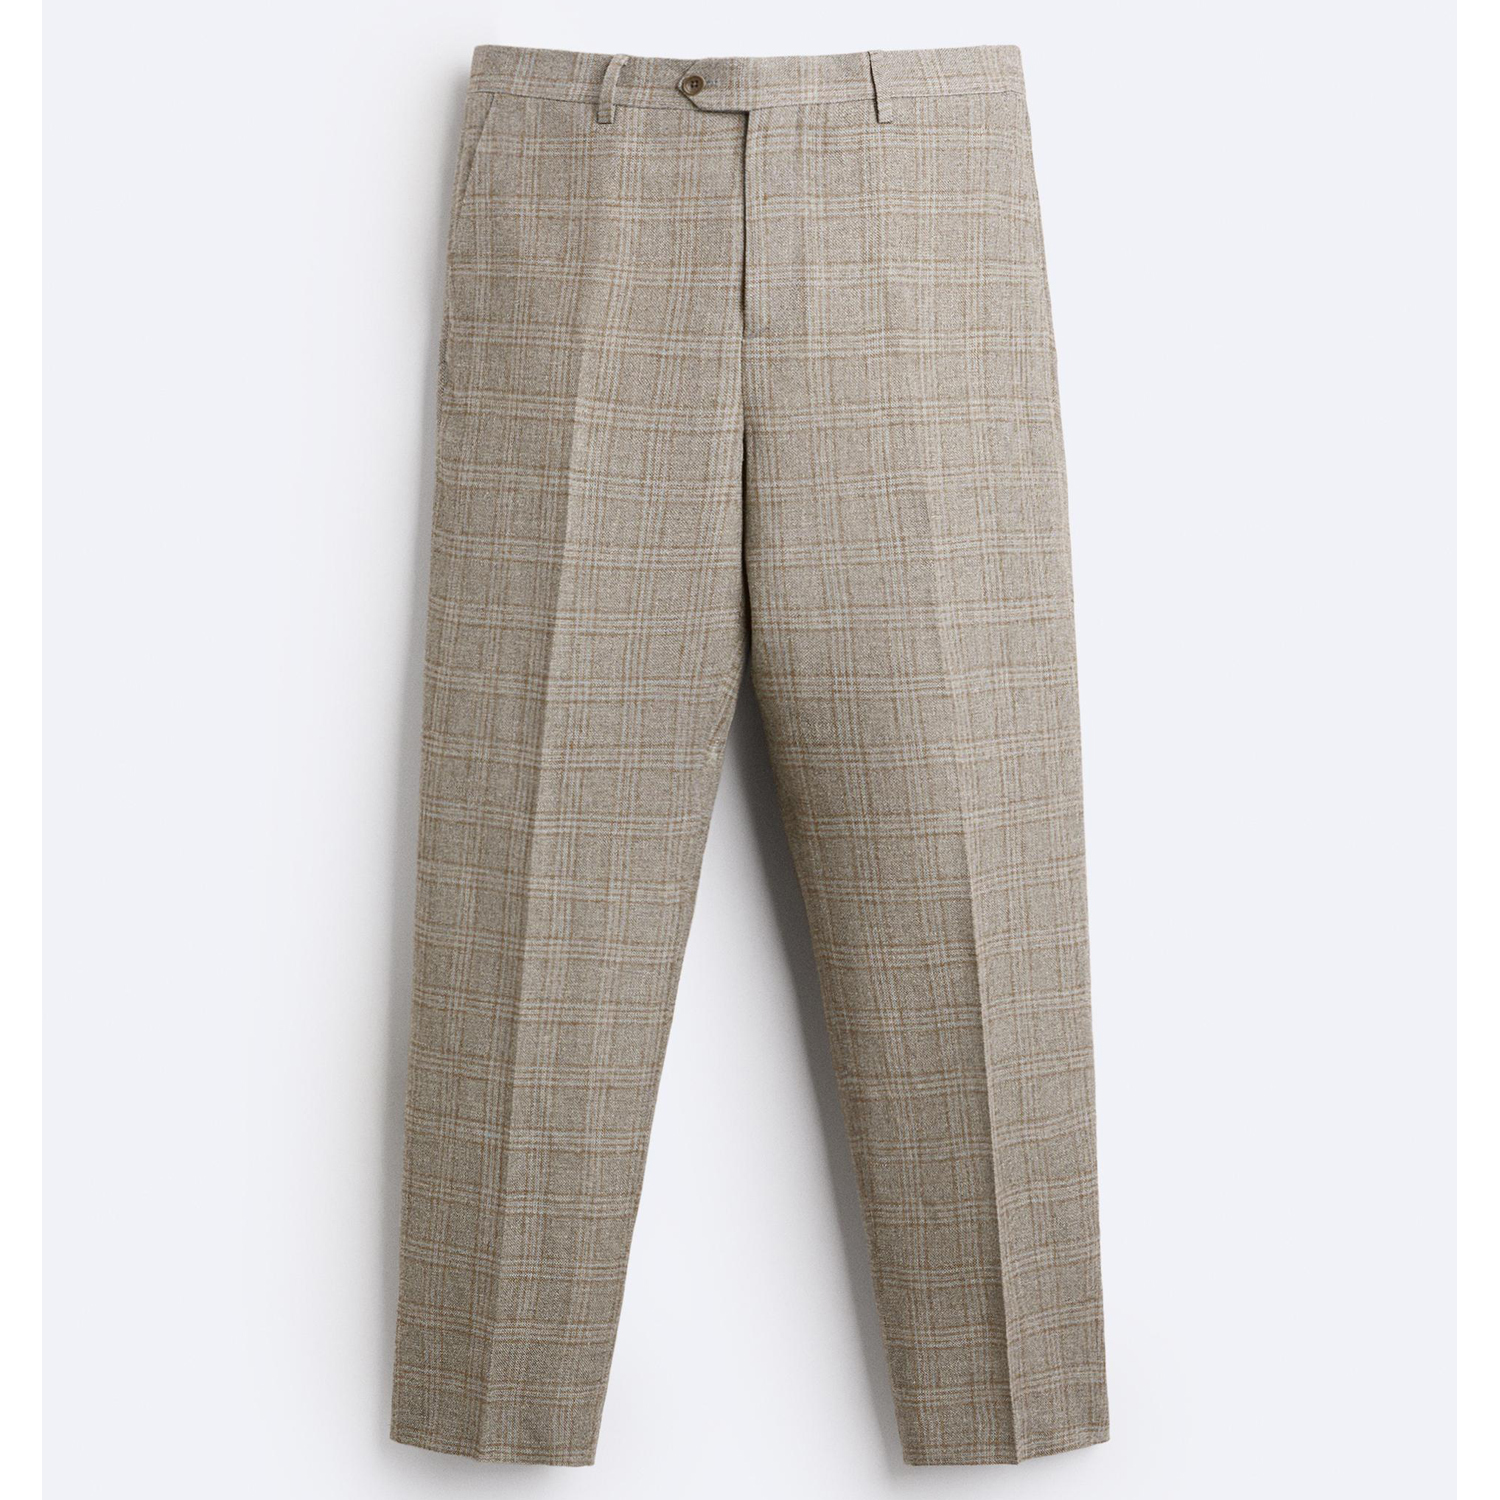 цена Брюки Zara Check Viscose - Linen Suit, серый/светло-коричневый